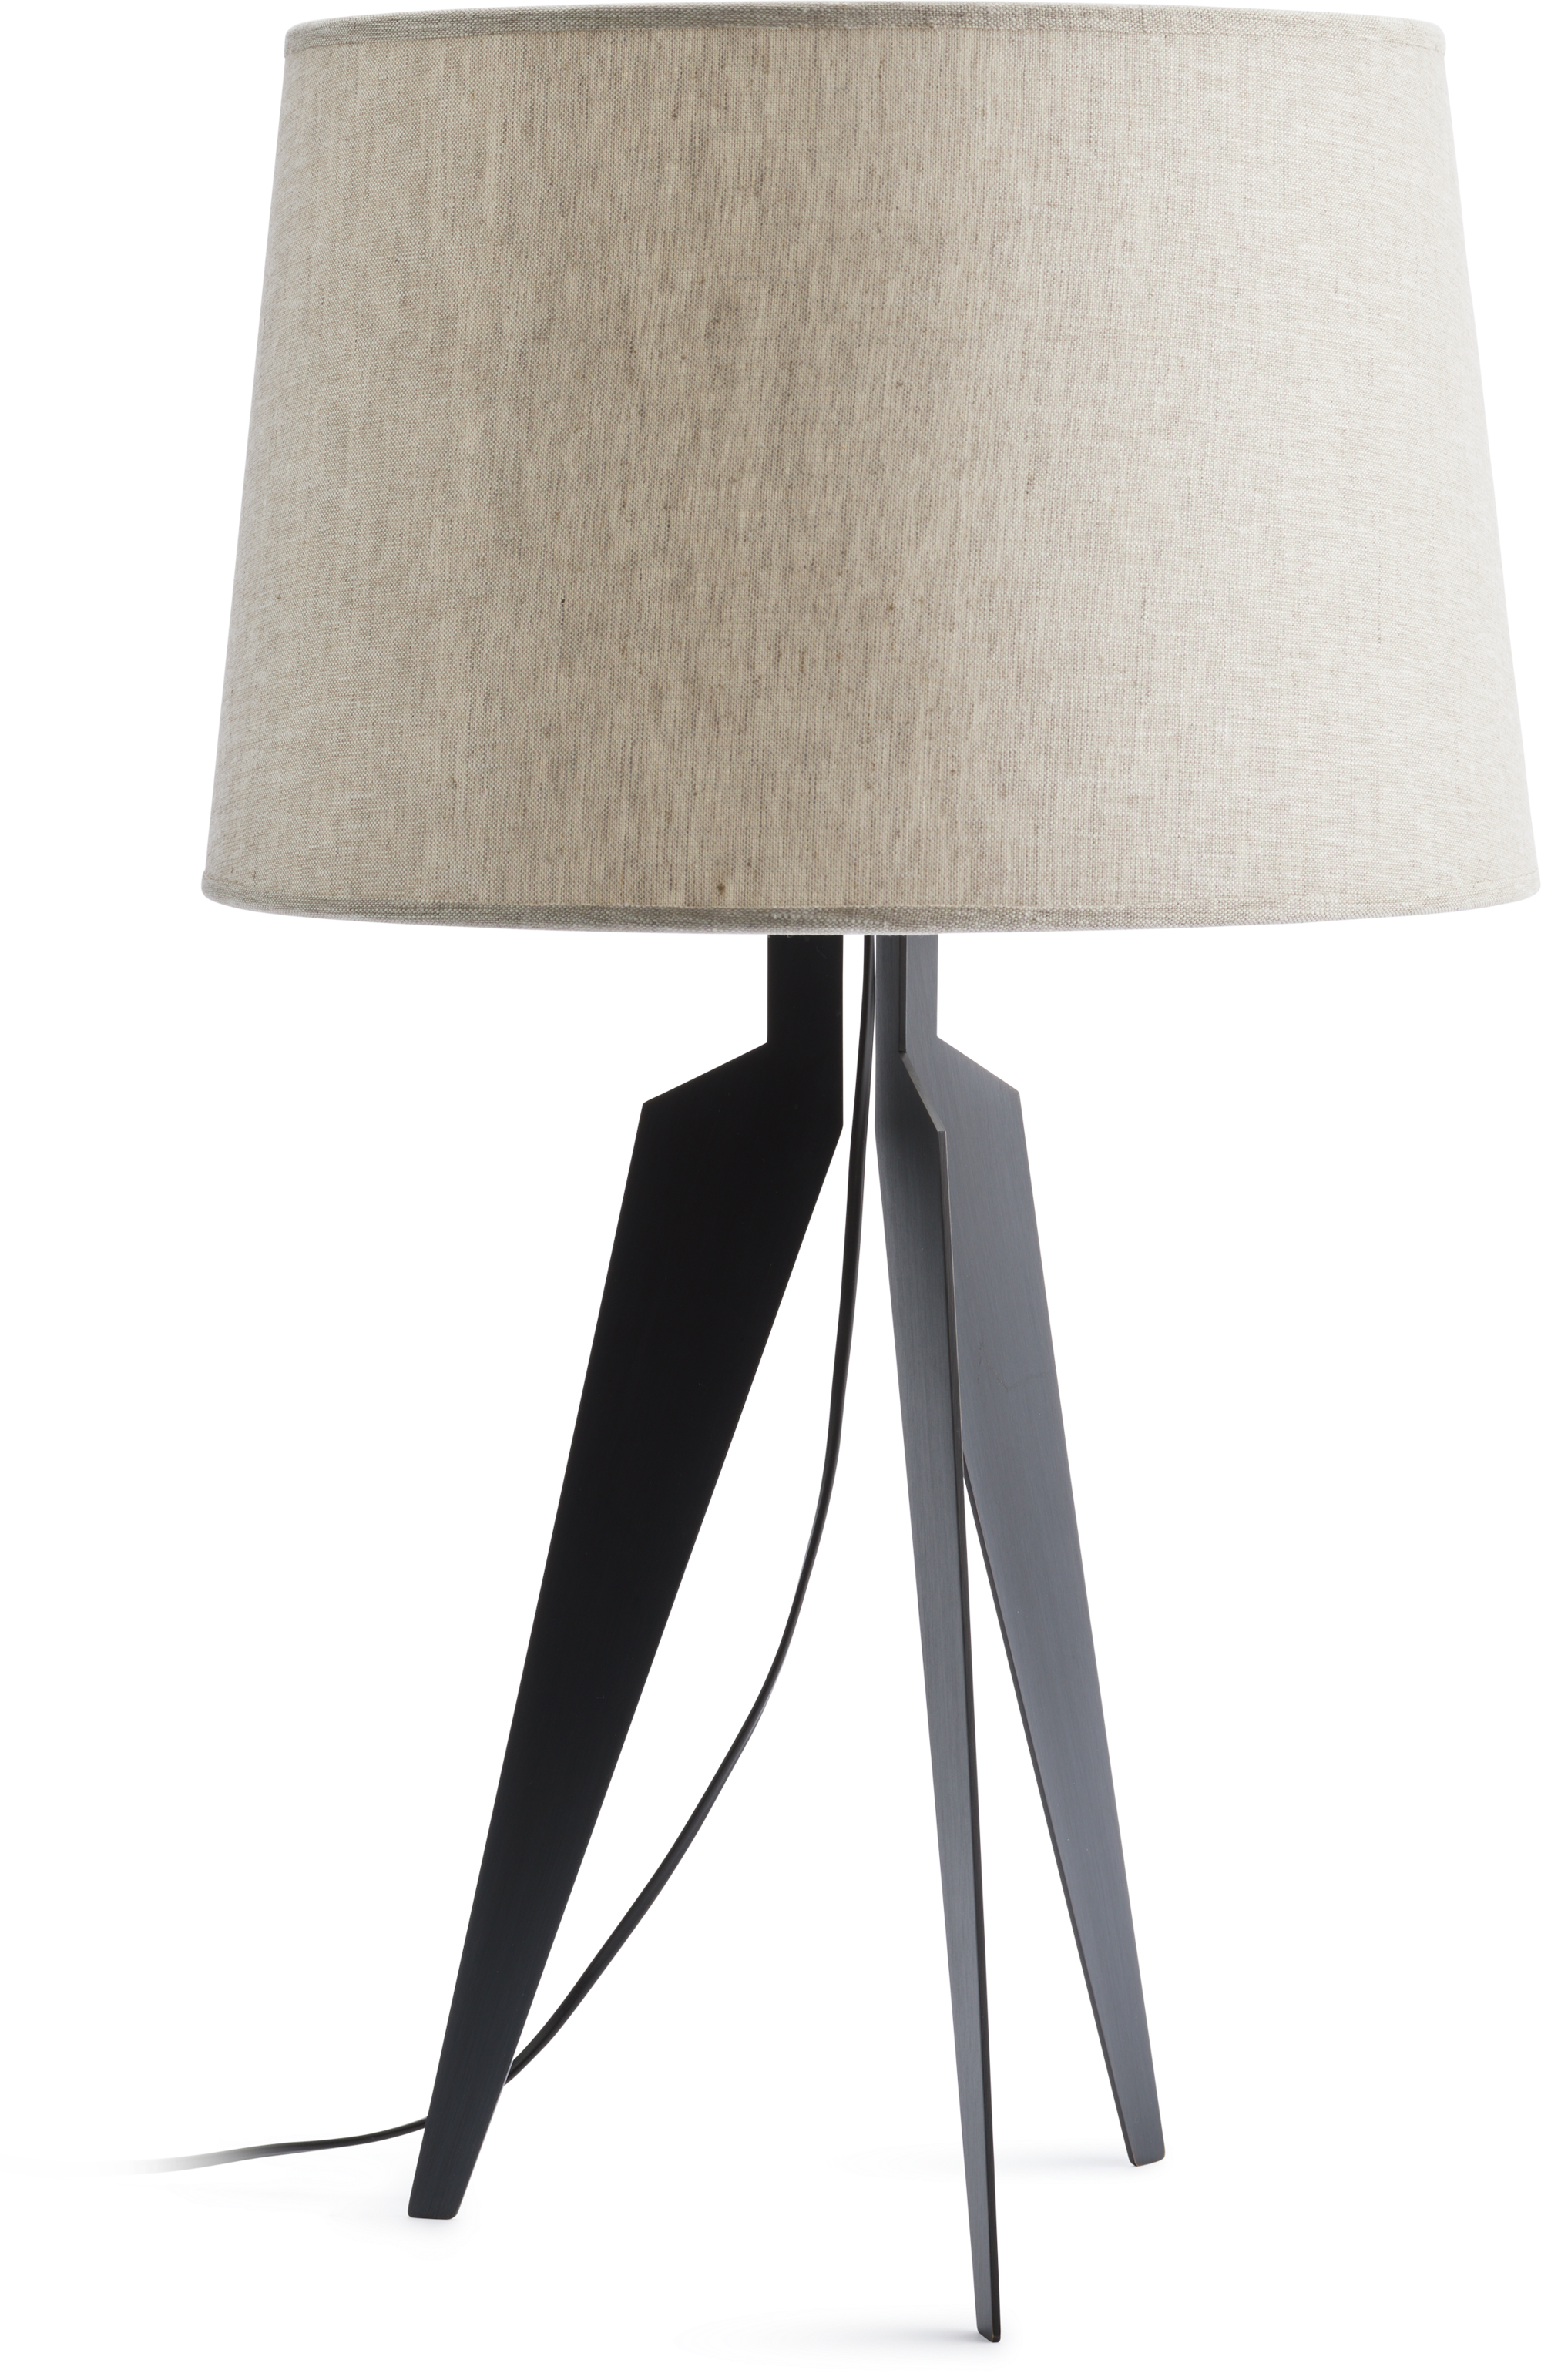 Albi table lamp